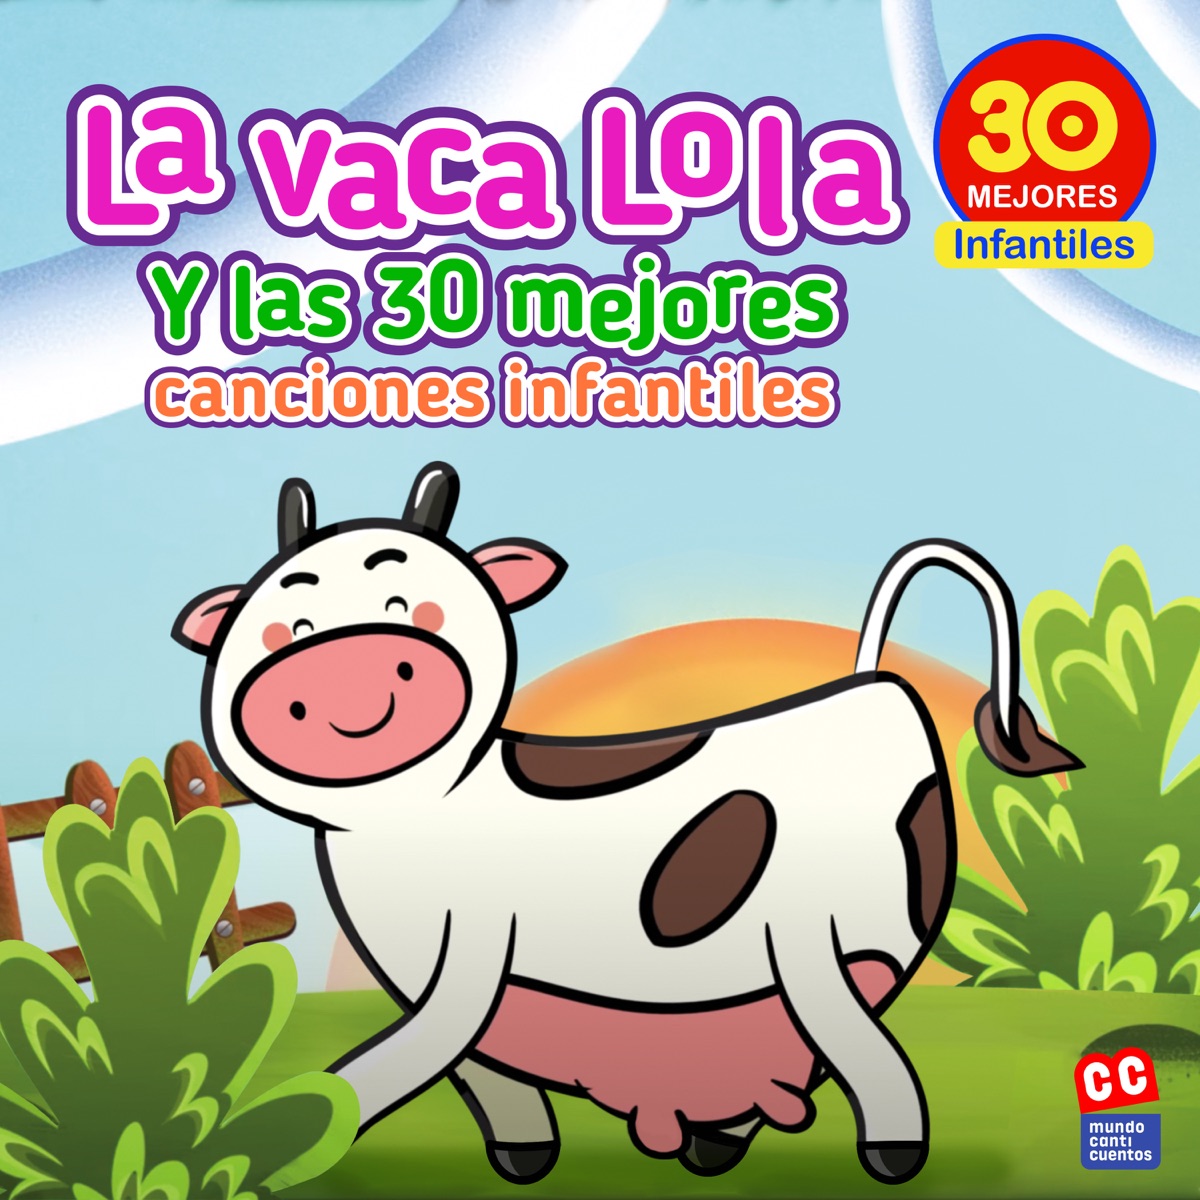 La Vaca Lola - Album by Canciones Infantiles - Apple Music